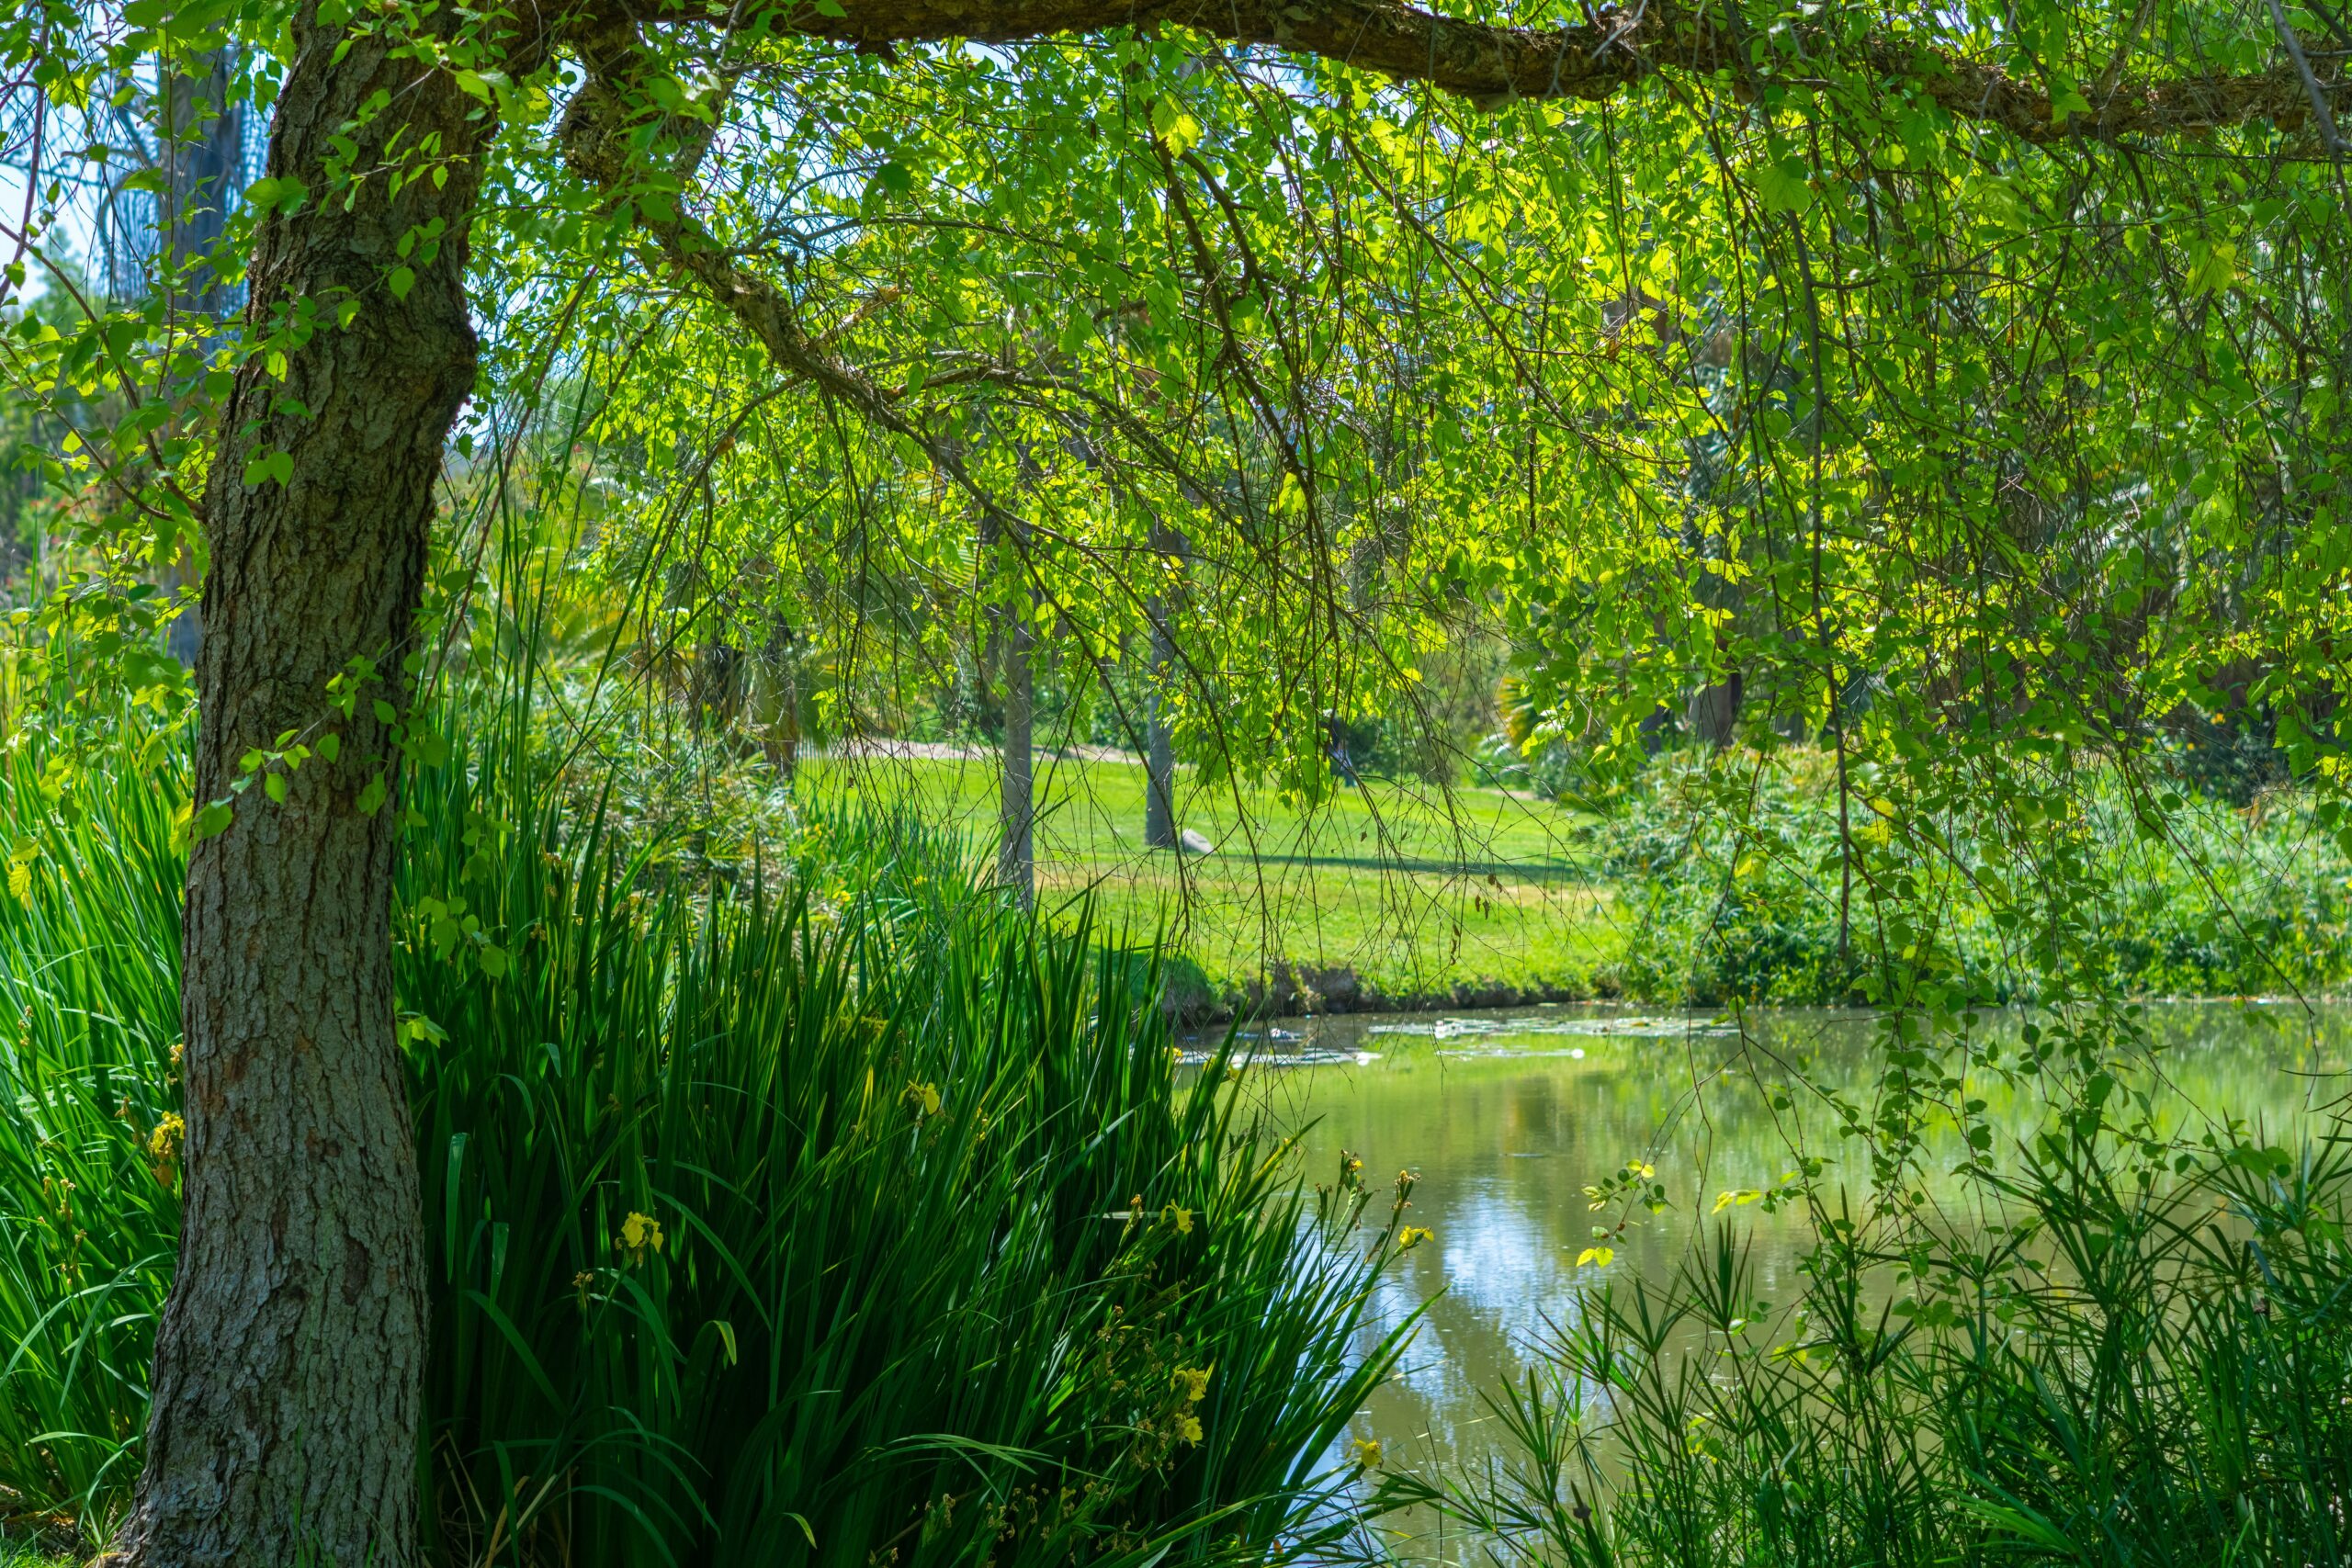 Explore the Fullerton Arboretum